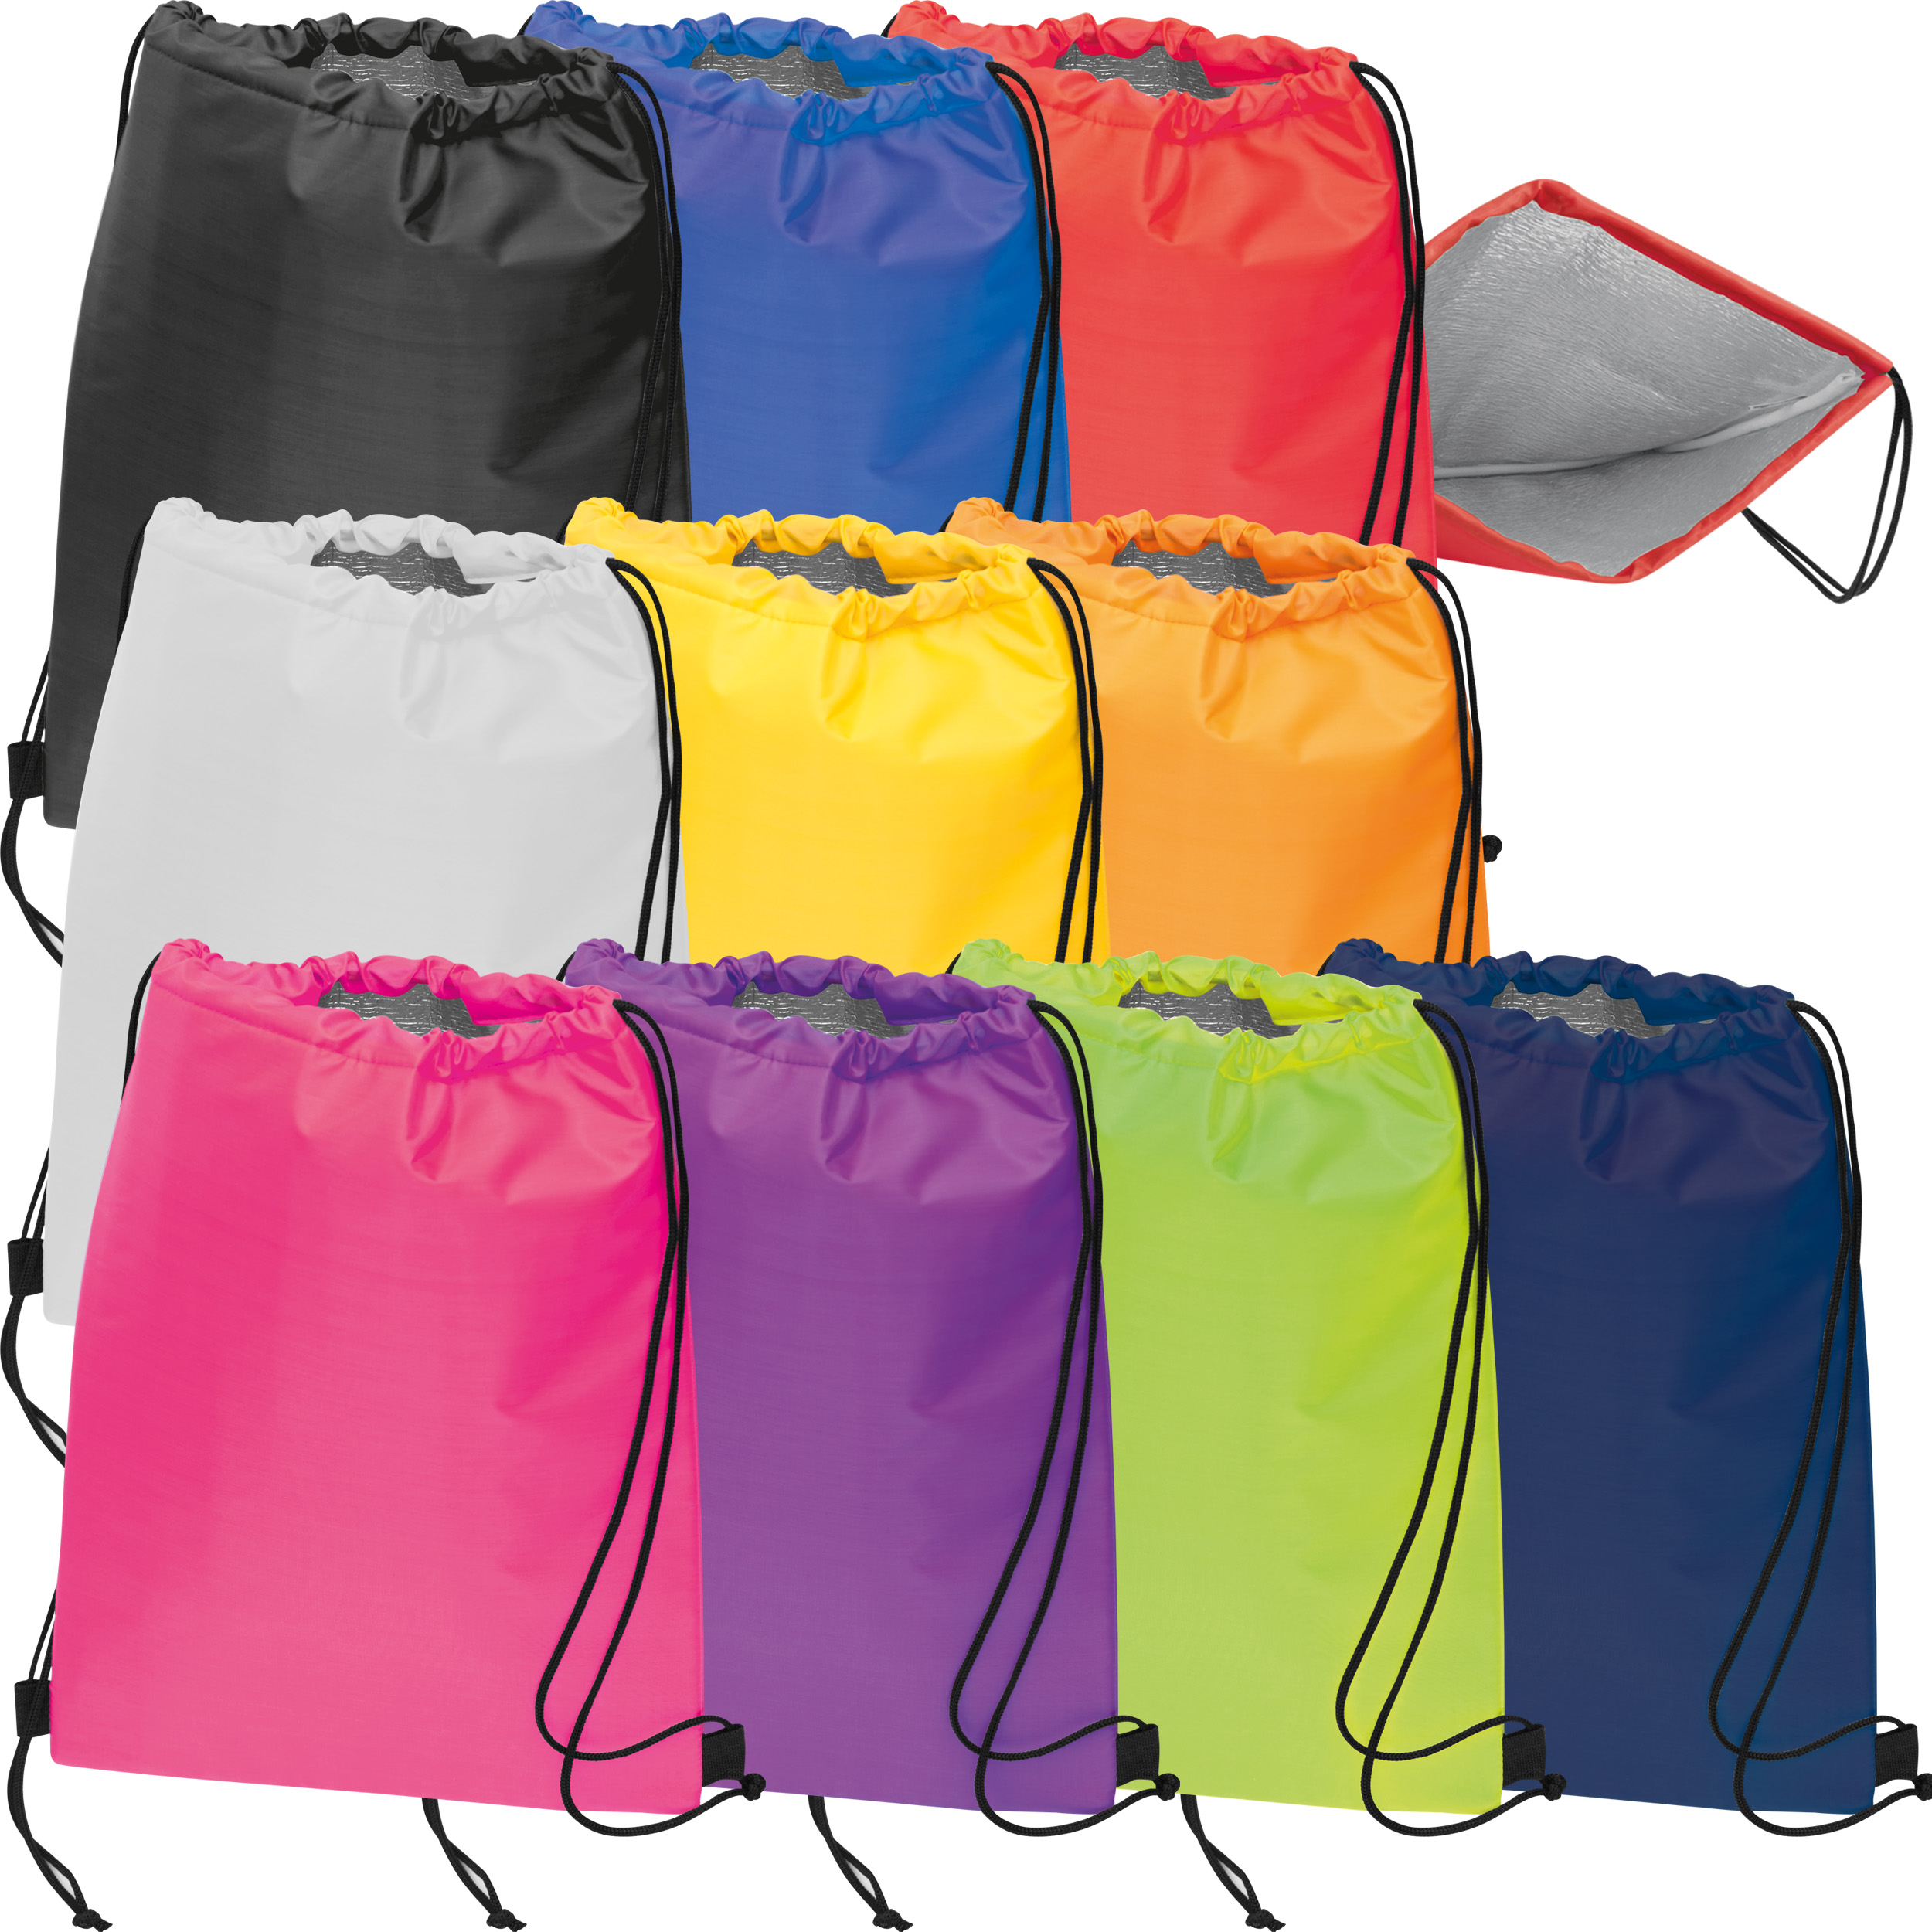 Gym bag made of polyester